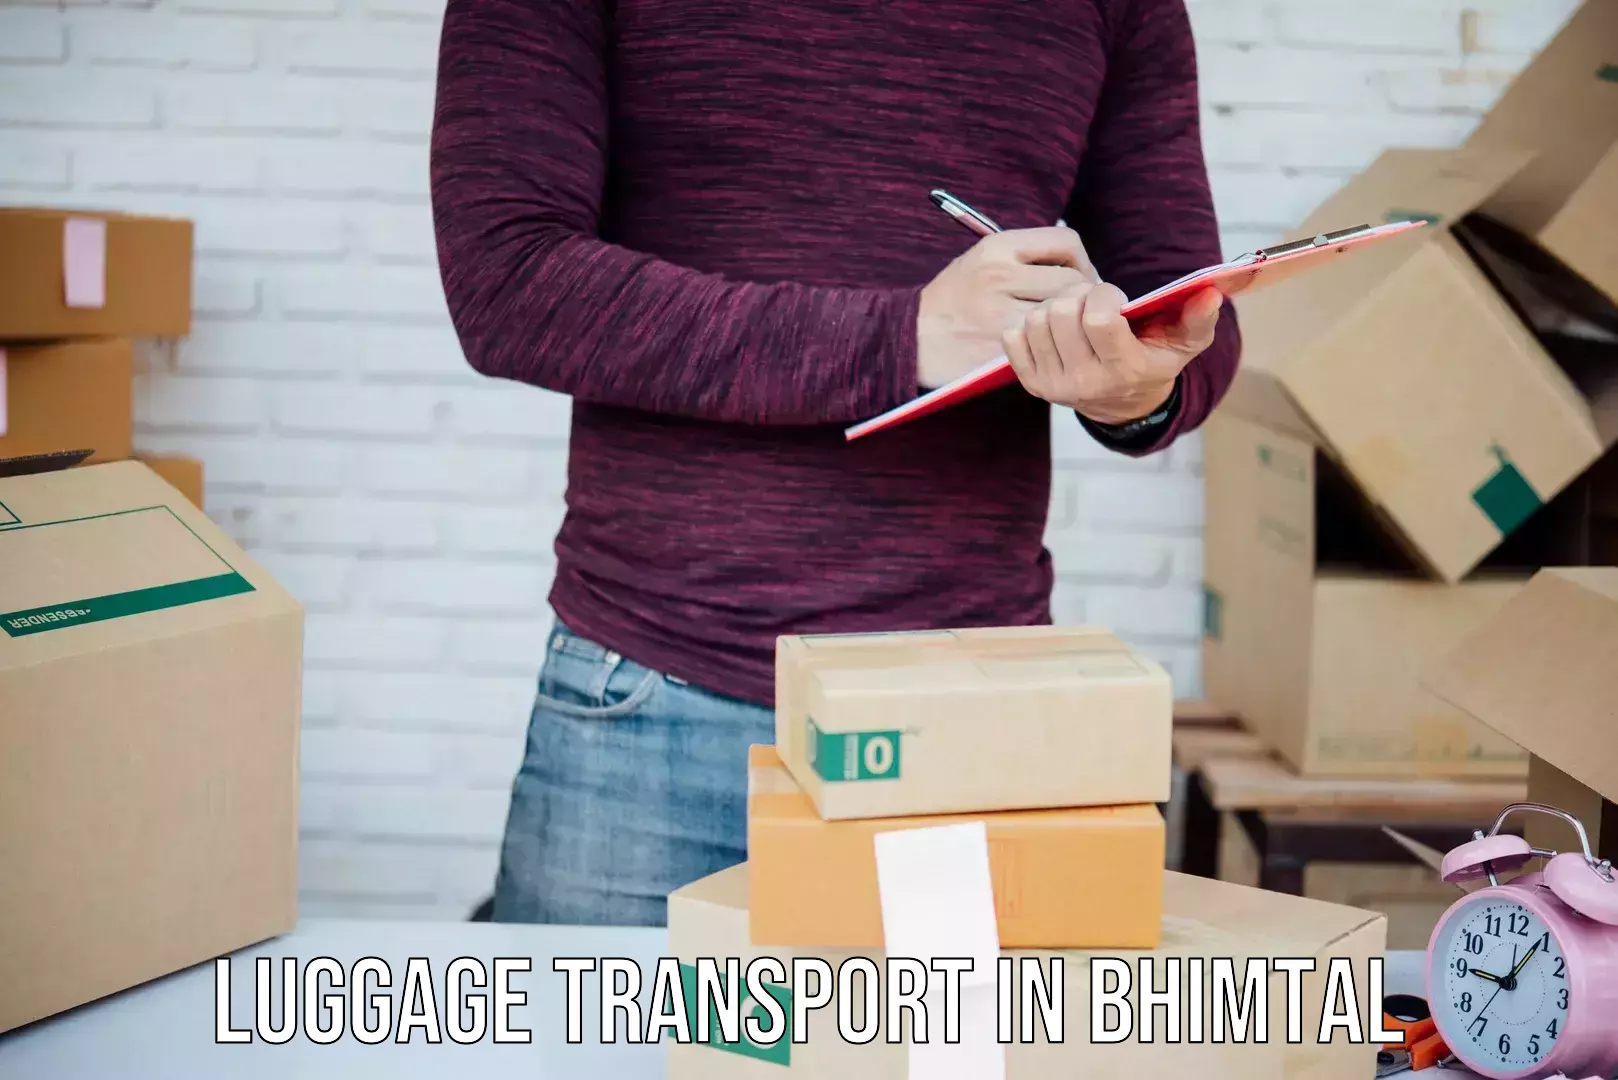 Regional luggage transport in Bhimtal